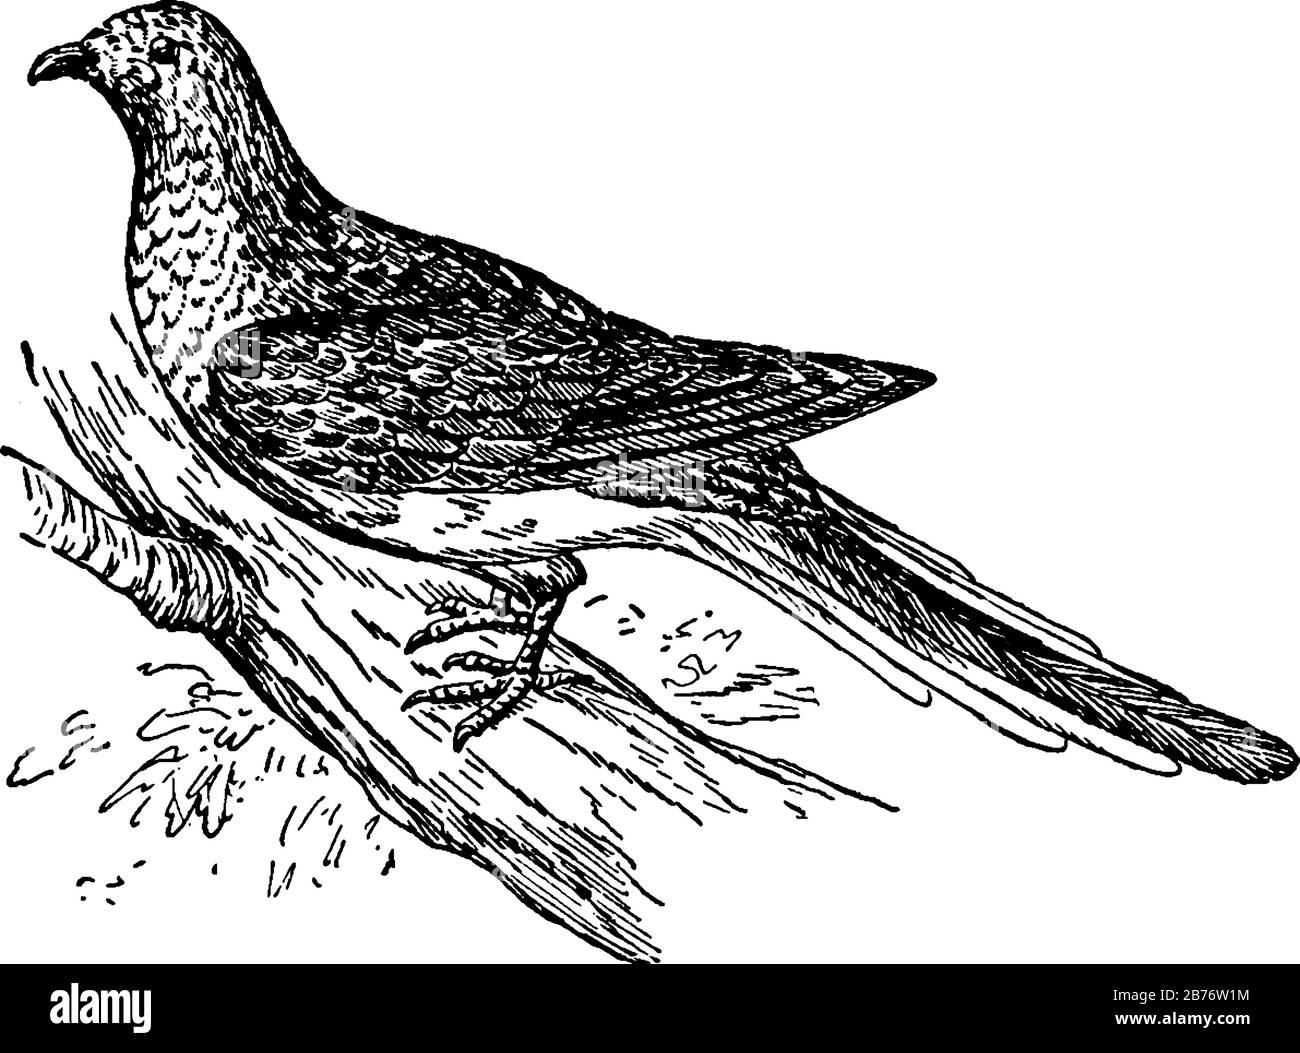 Le pigeon des passagers était très abondant en Amérique du Nord, mais il est finalement devenu éteint à cause de la chasse. Il montre que Le pigeon de passager était très un Illustration de Vecteur